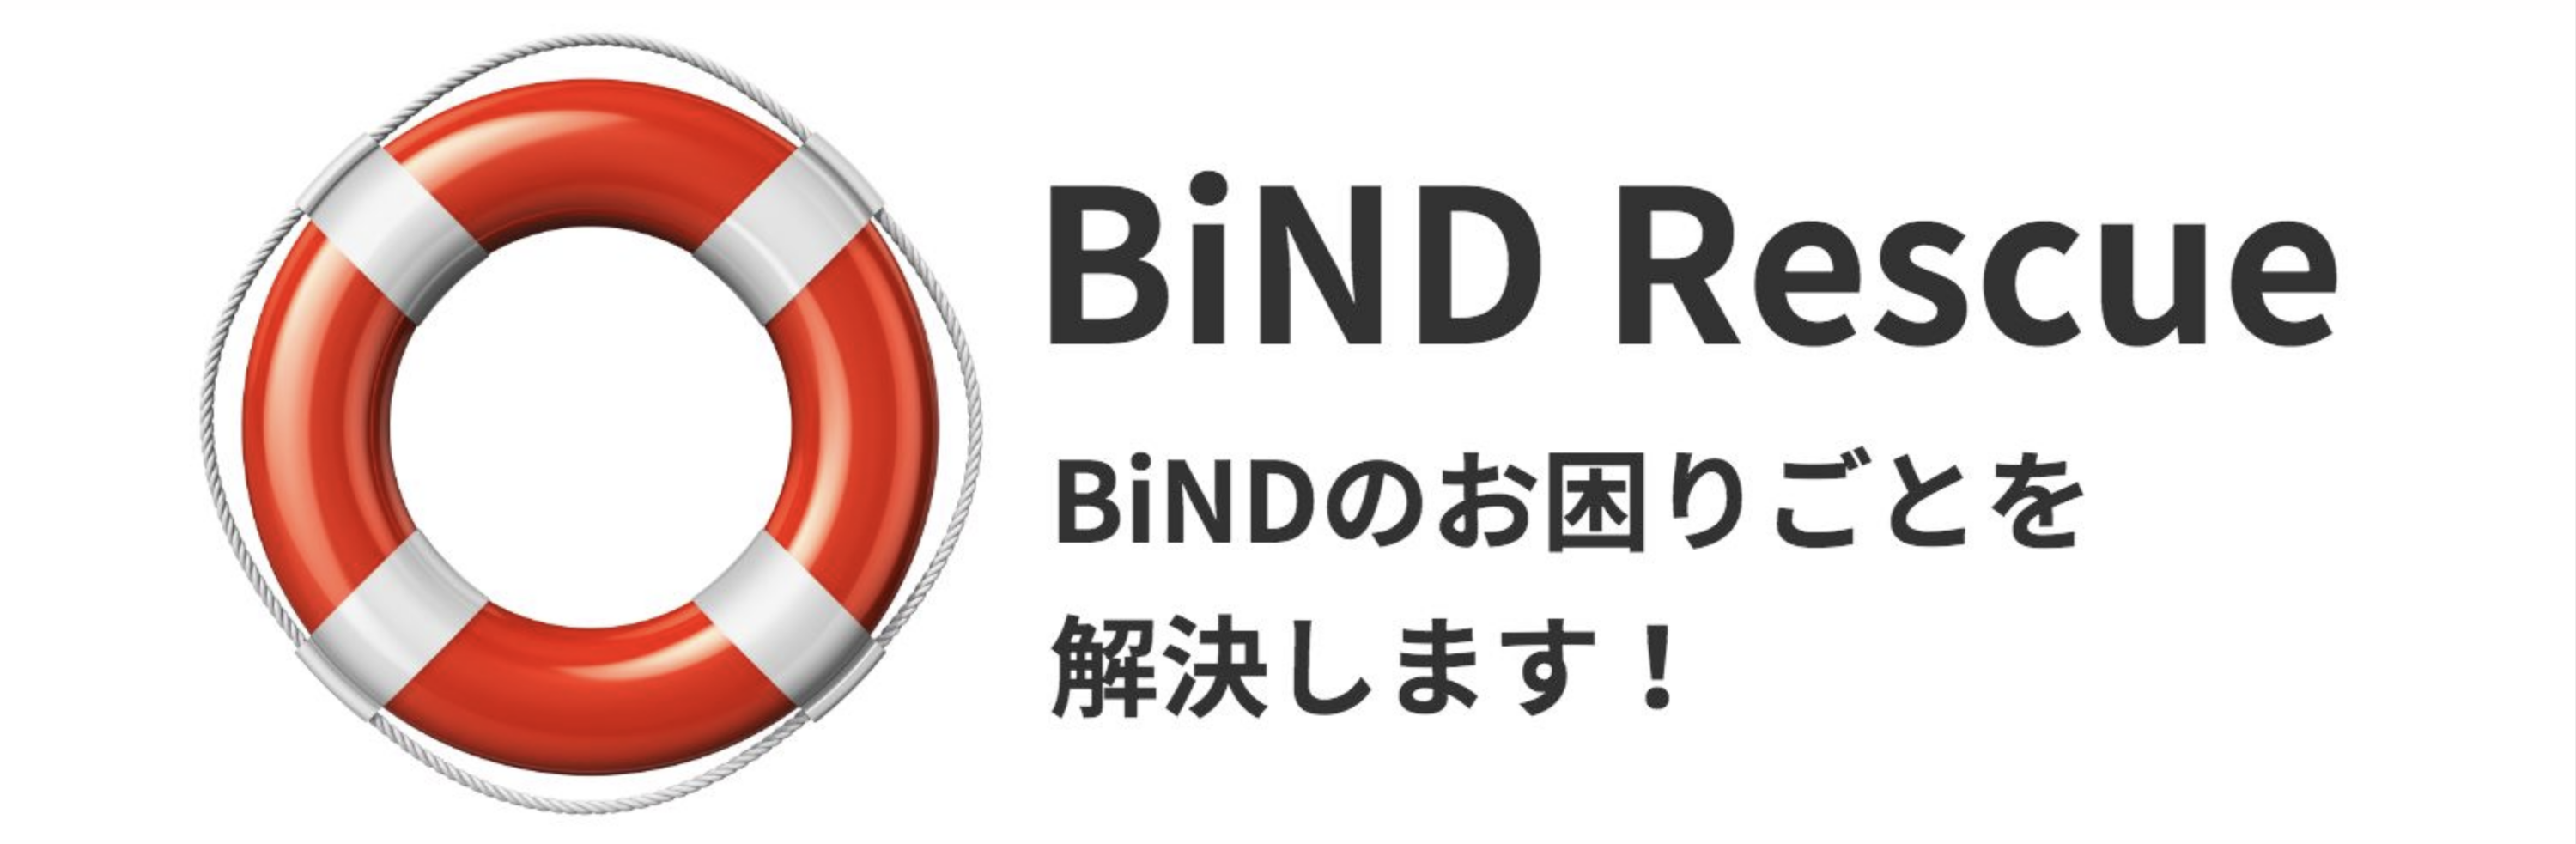 BiND Rescue